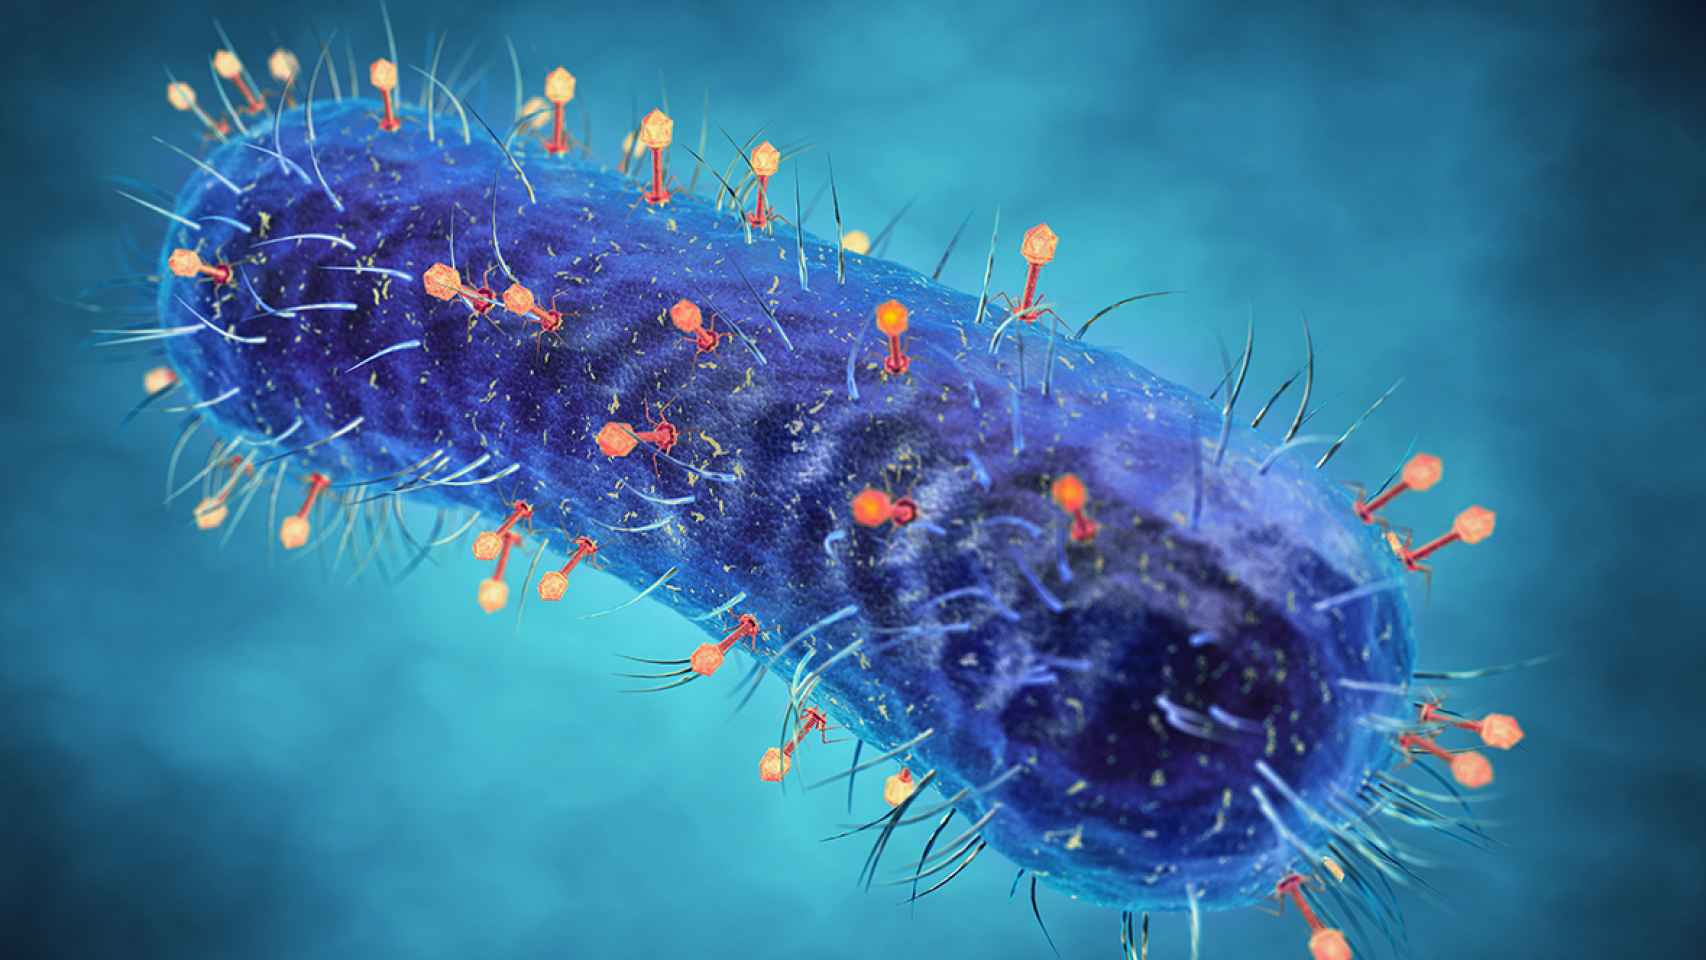 Bacteria 'coliphages', patentada por la empresa, que en presencia de colífagos, unos virus que infectan bacterias, se produce un cambio de color de la muestra de agua.